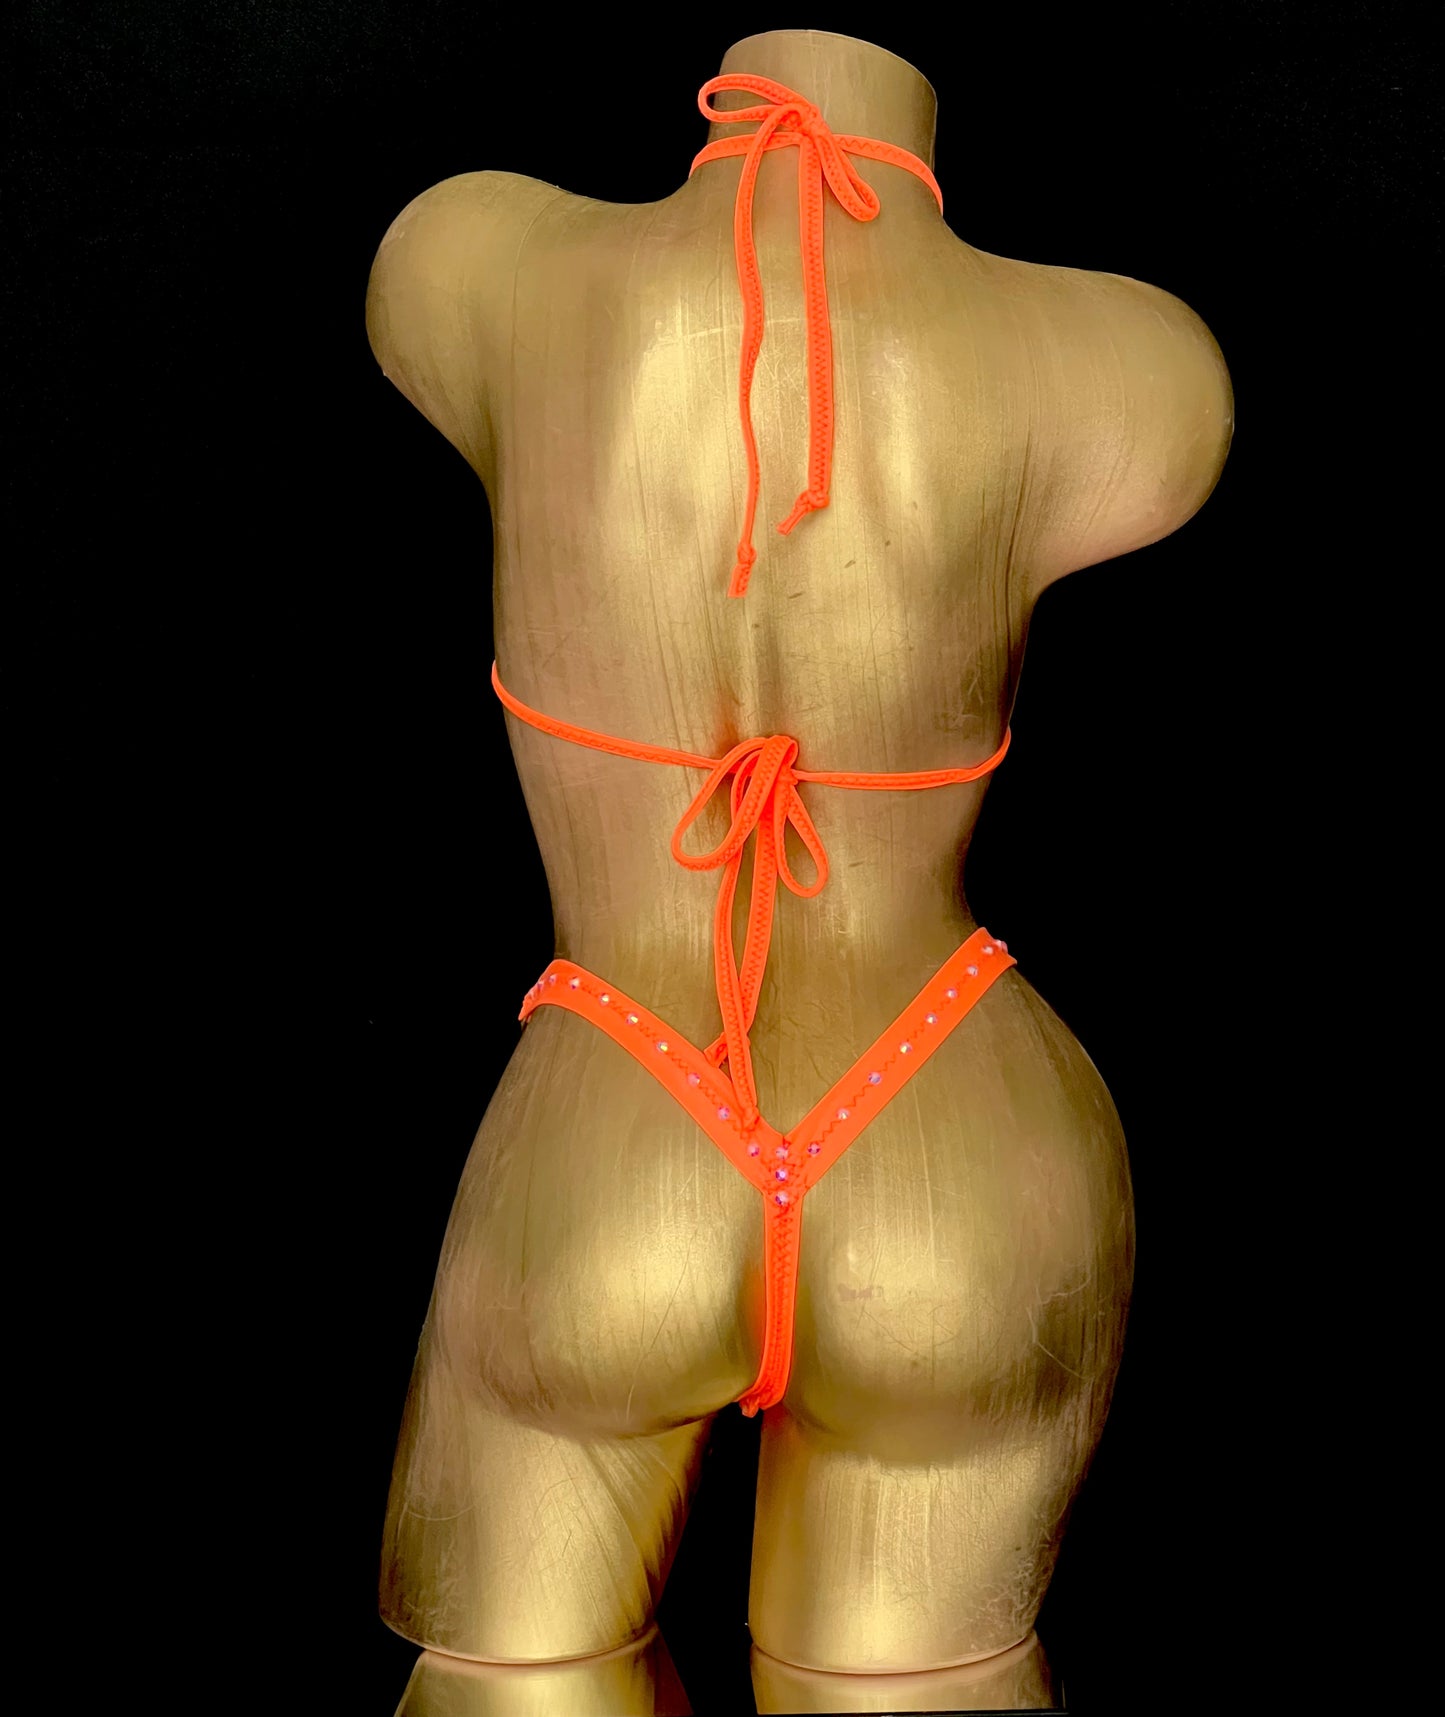 Elevate this Bikini Orange and make it truly shine